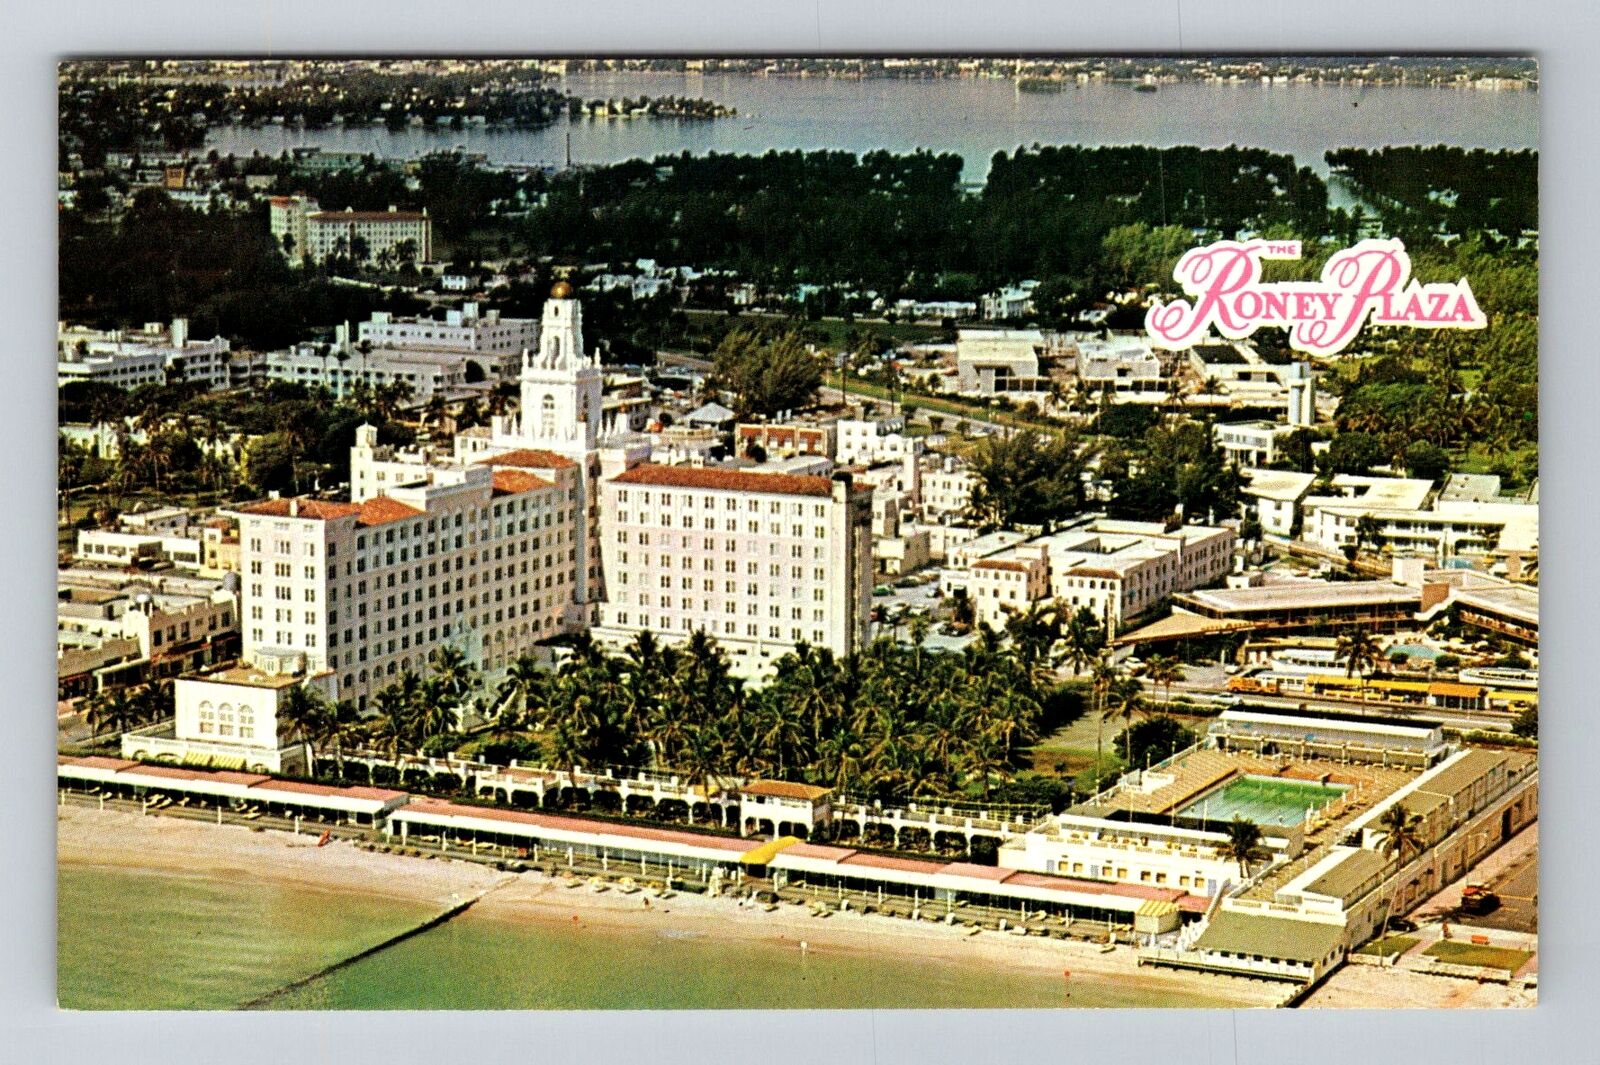 Miami Beach FL-Florida, Roney Plaza, Advertising, Vintage Postcard